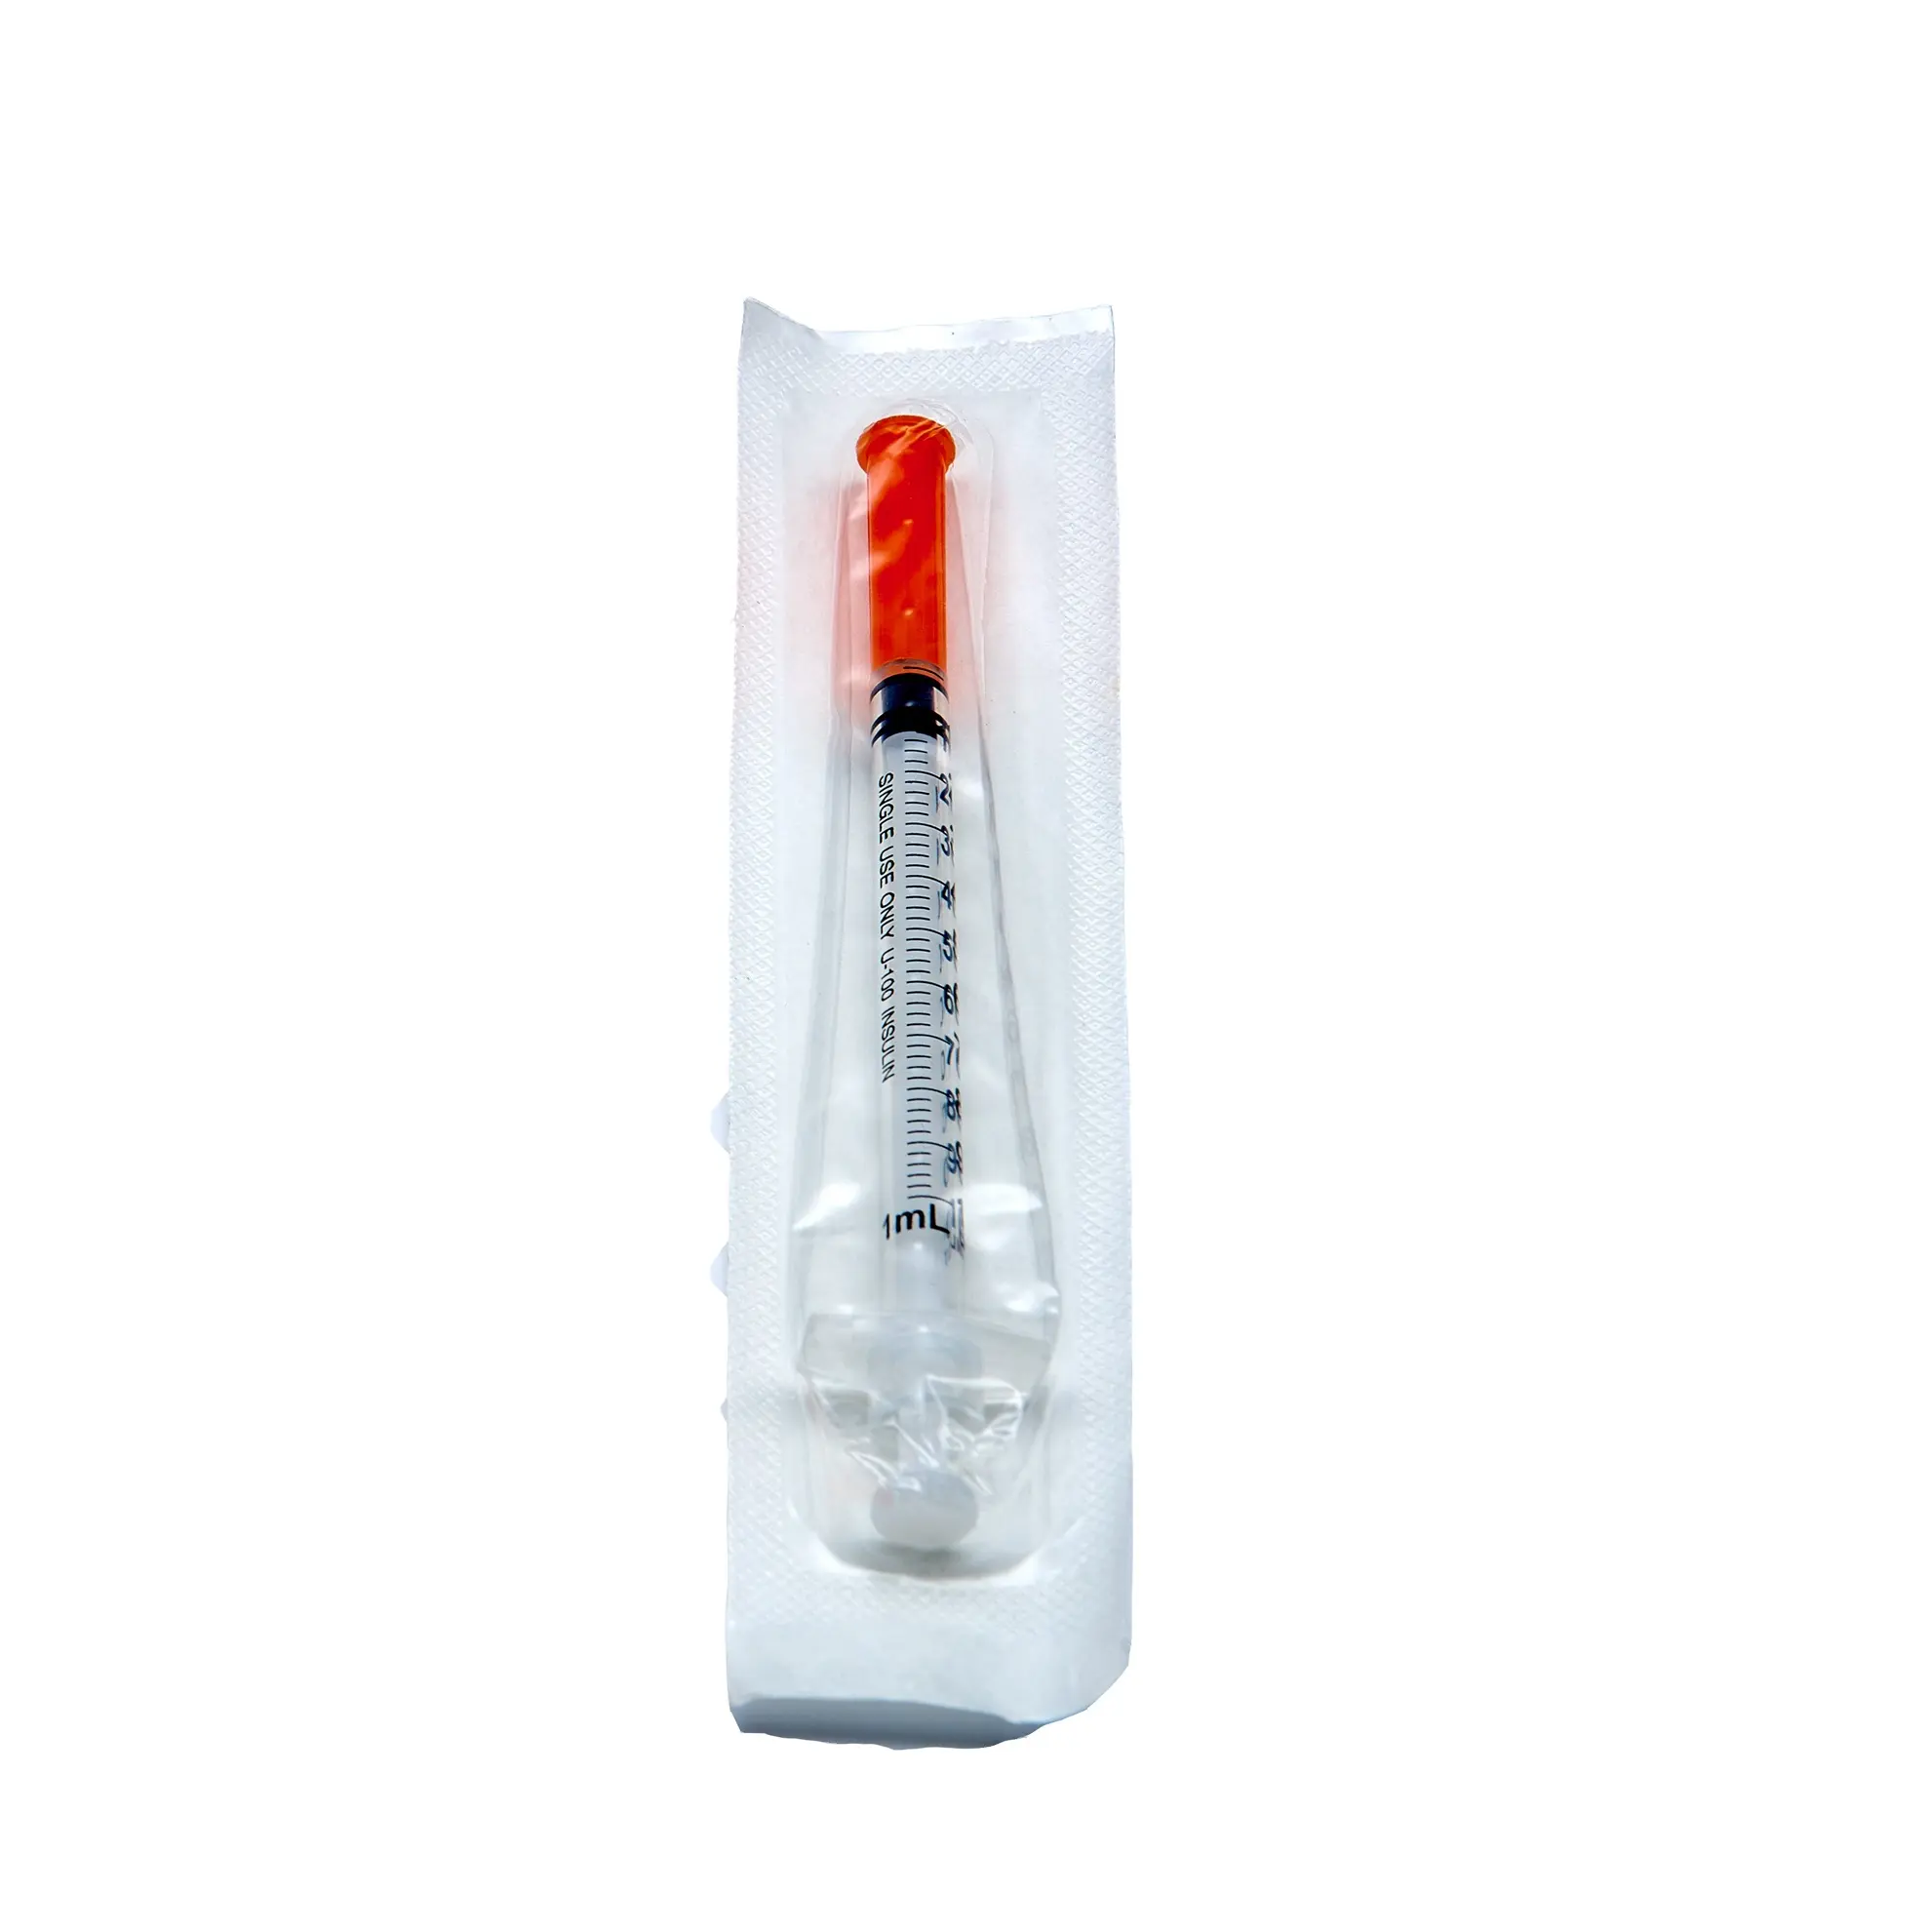 ODM jarum suntik Insulin sekali pakai steril 0.3ml dan 0.5ml dengan pelindung jarum perisai untuk penyimpanan yang aman dan nyaman